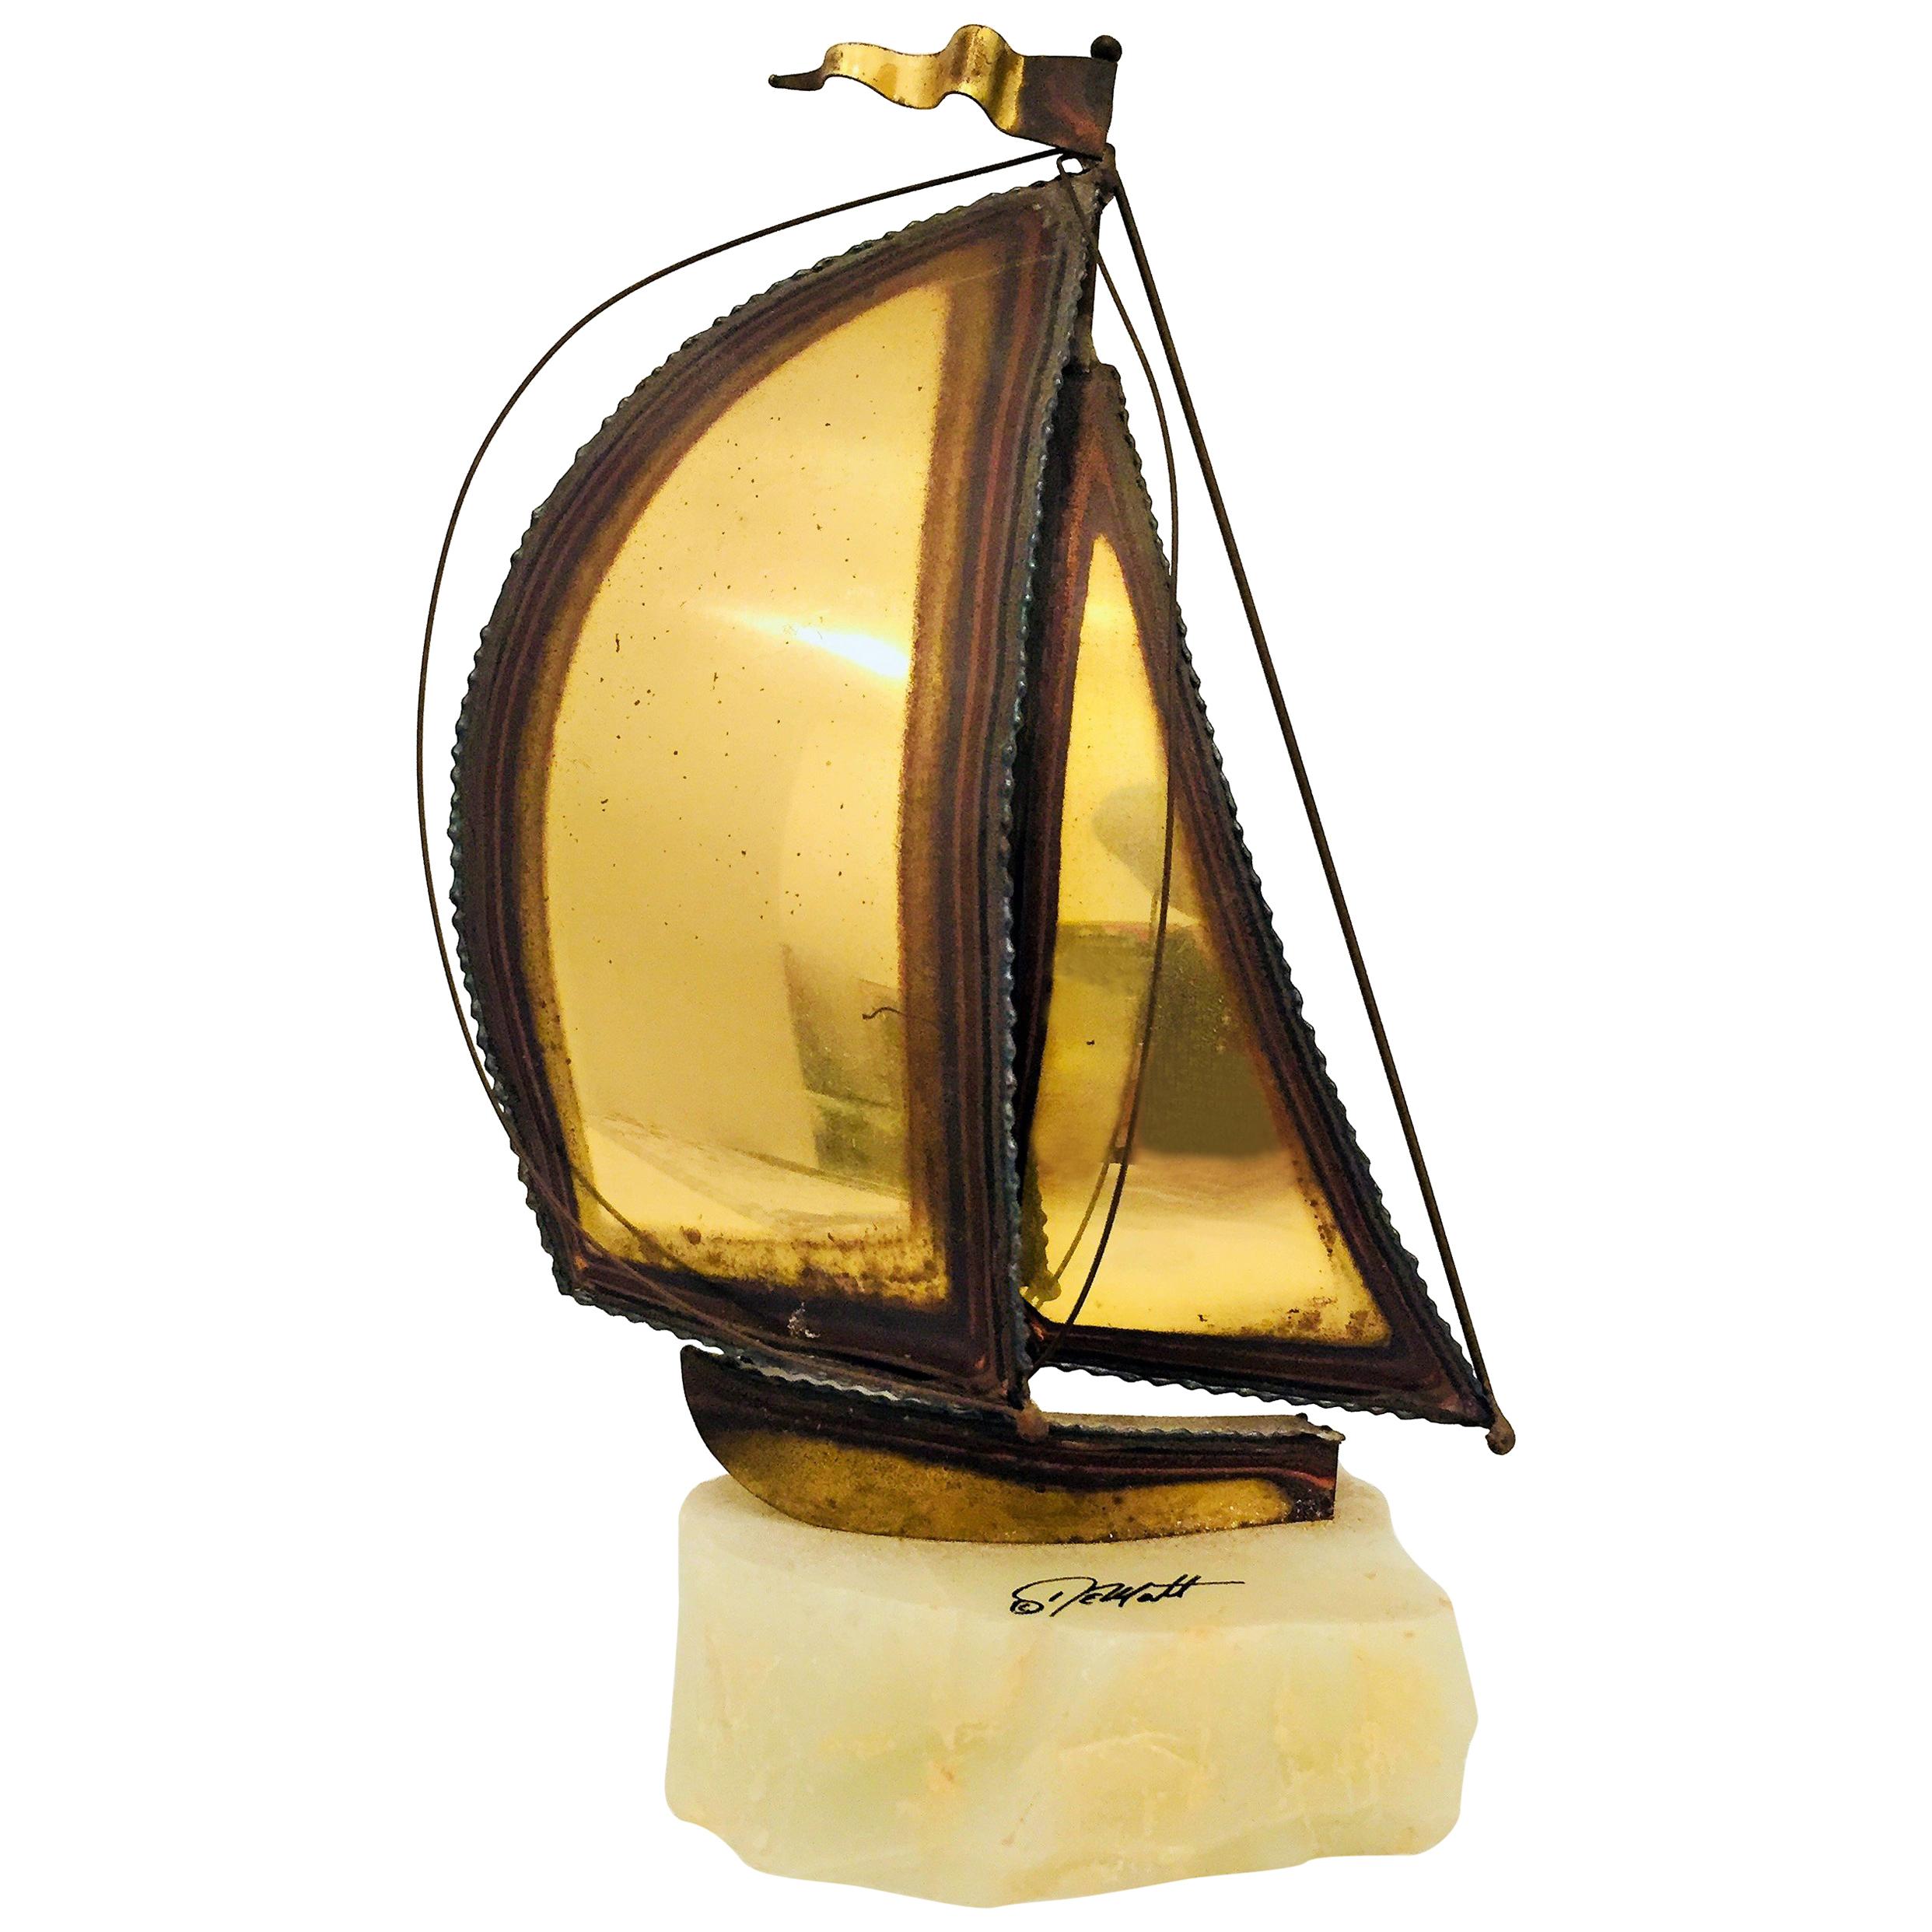 Demott Brass Boat Sculpture